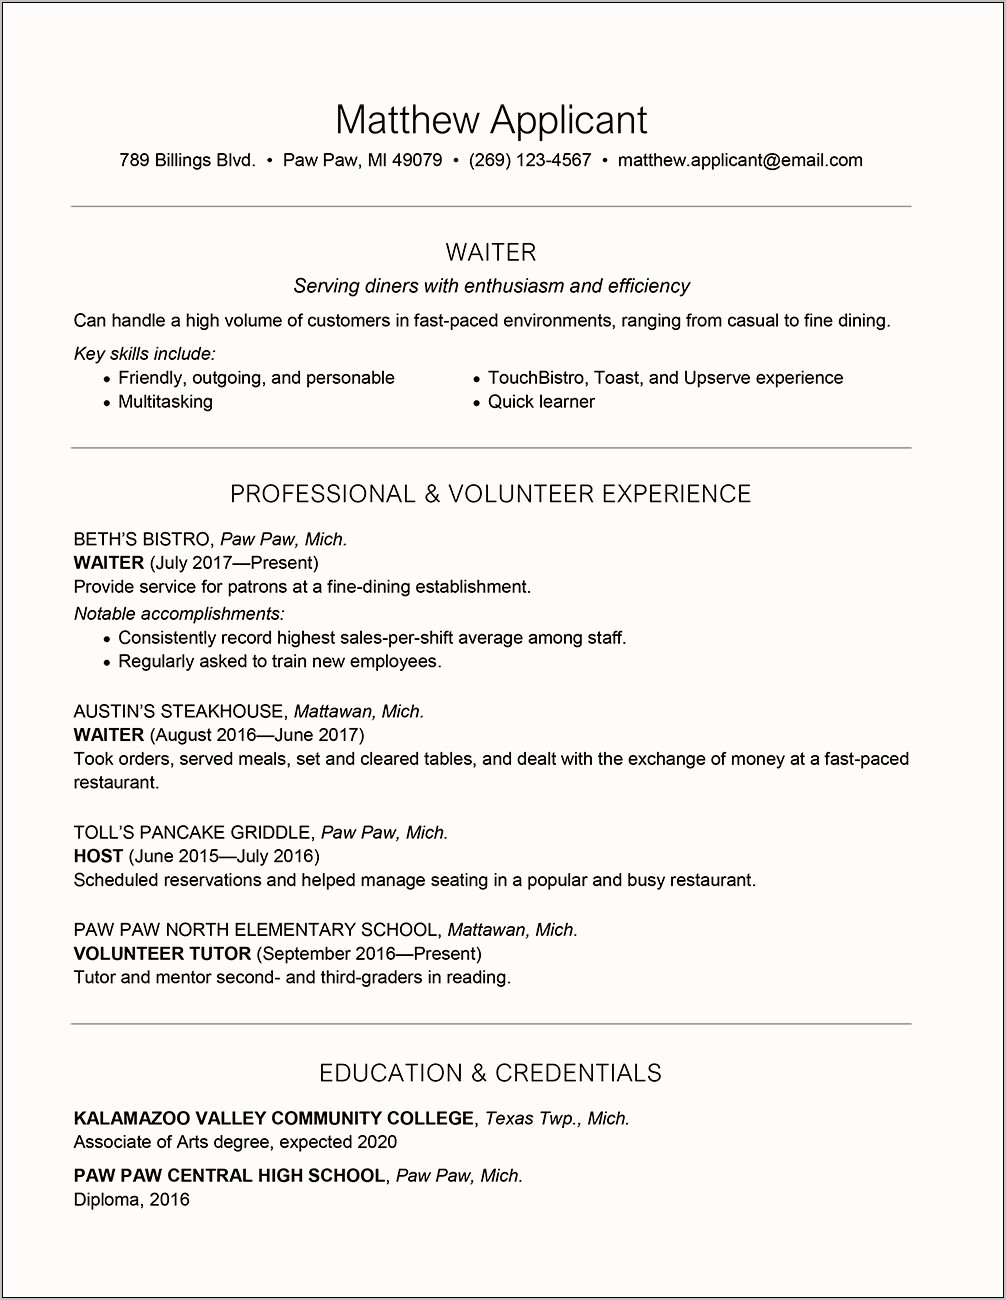 Captain Waiter Job Description For Resume